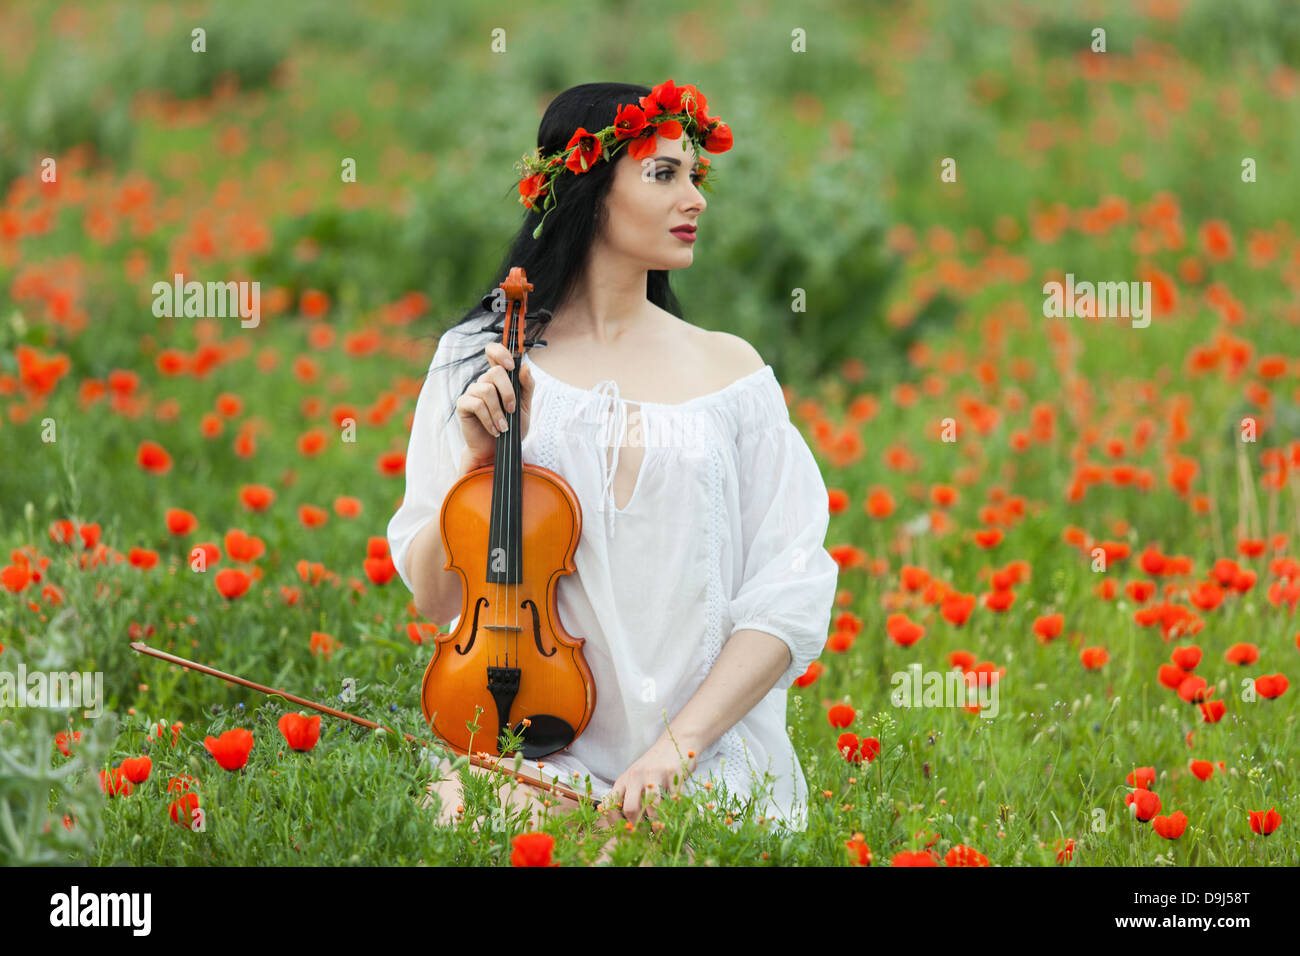 Une fille avec un violon dans une chemise blanche sur un champ de coquelicots Banque D'Images